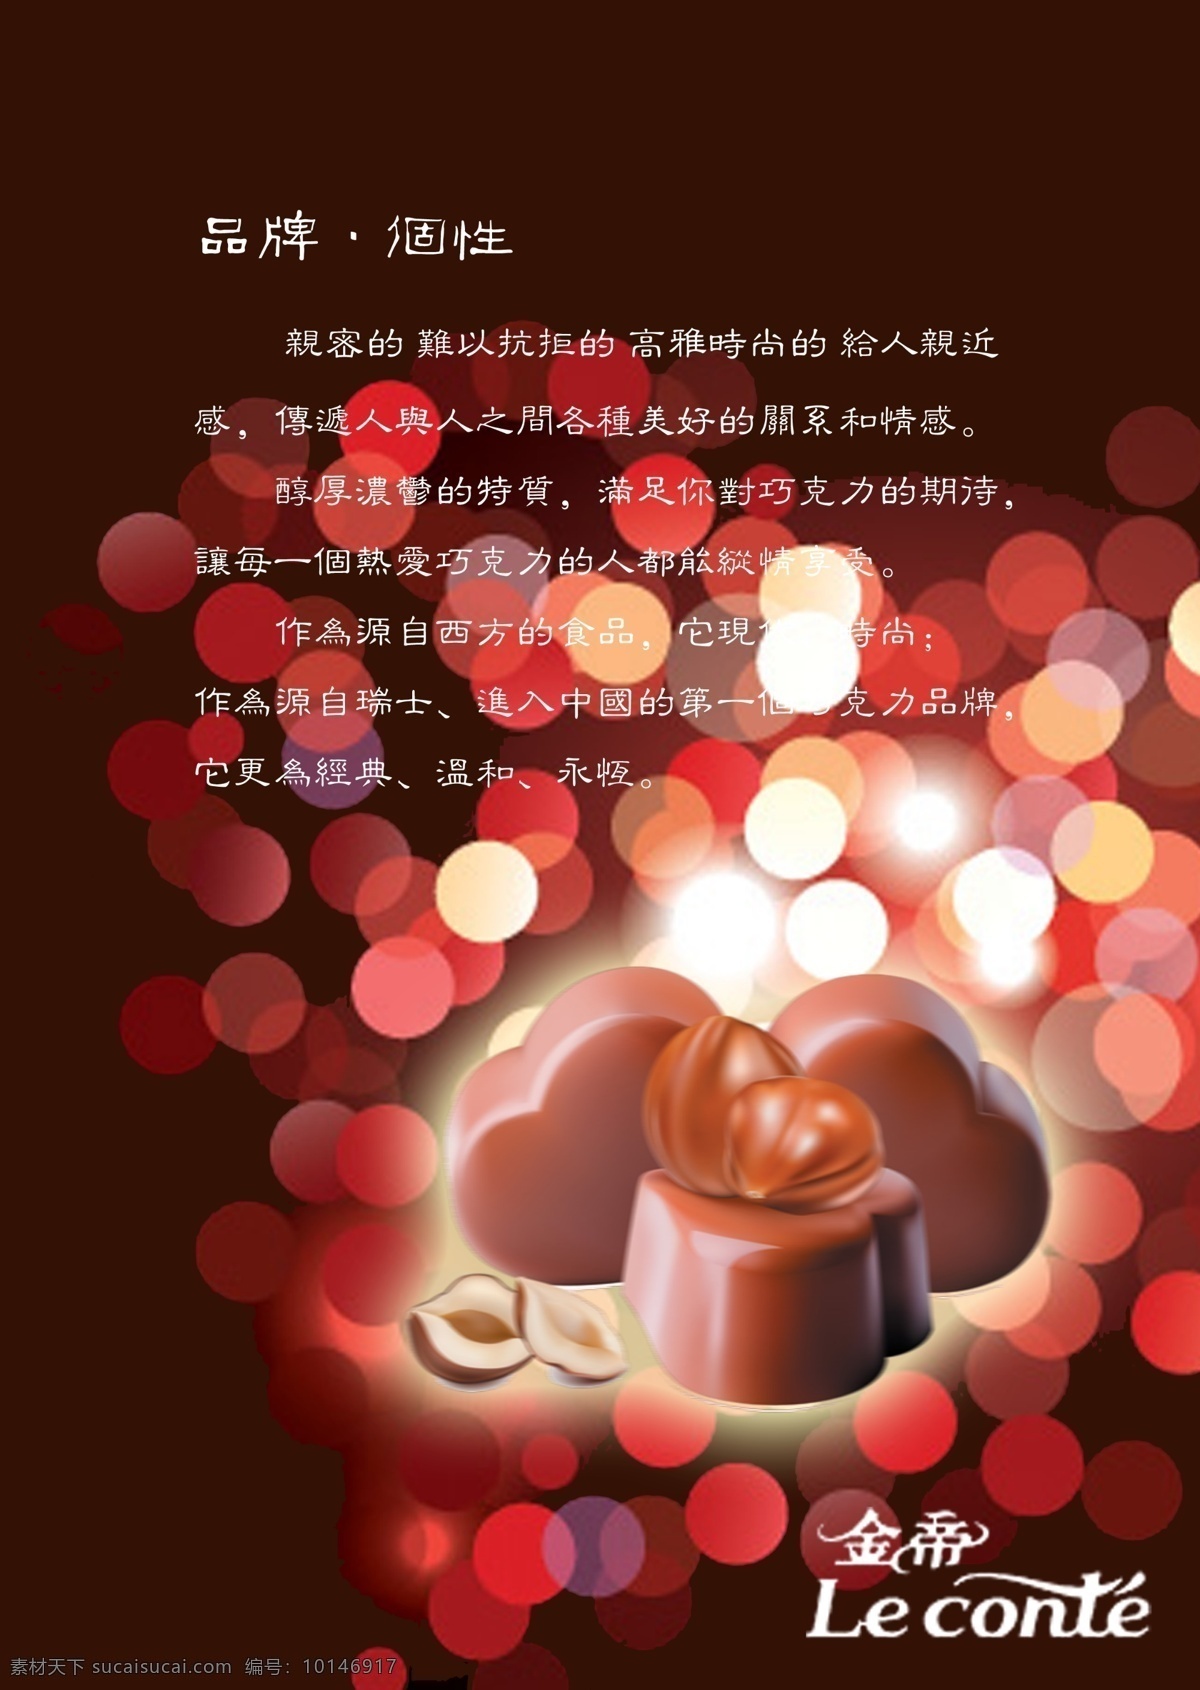 金帝封底 巧克力 浓香 丝滑 甜蜜 巧克力dm单 dm宣传单 广告设计模板 源文件